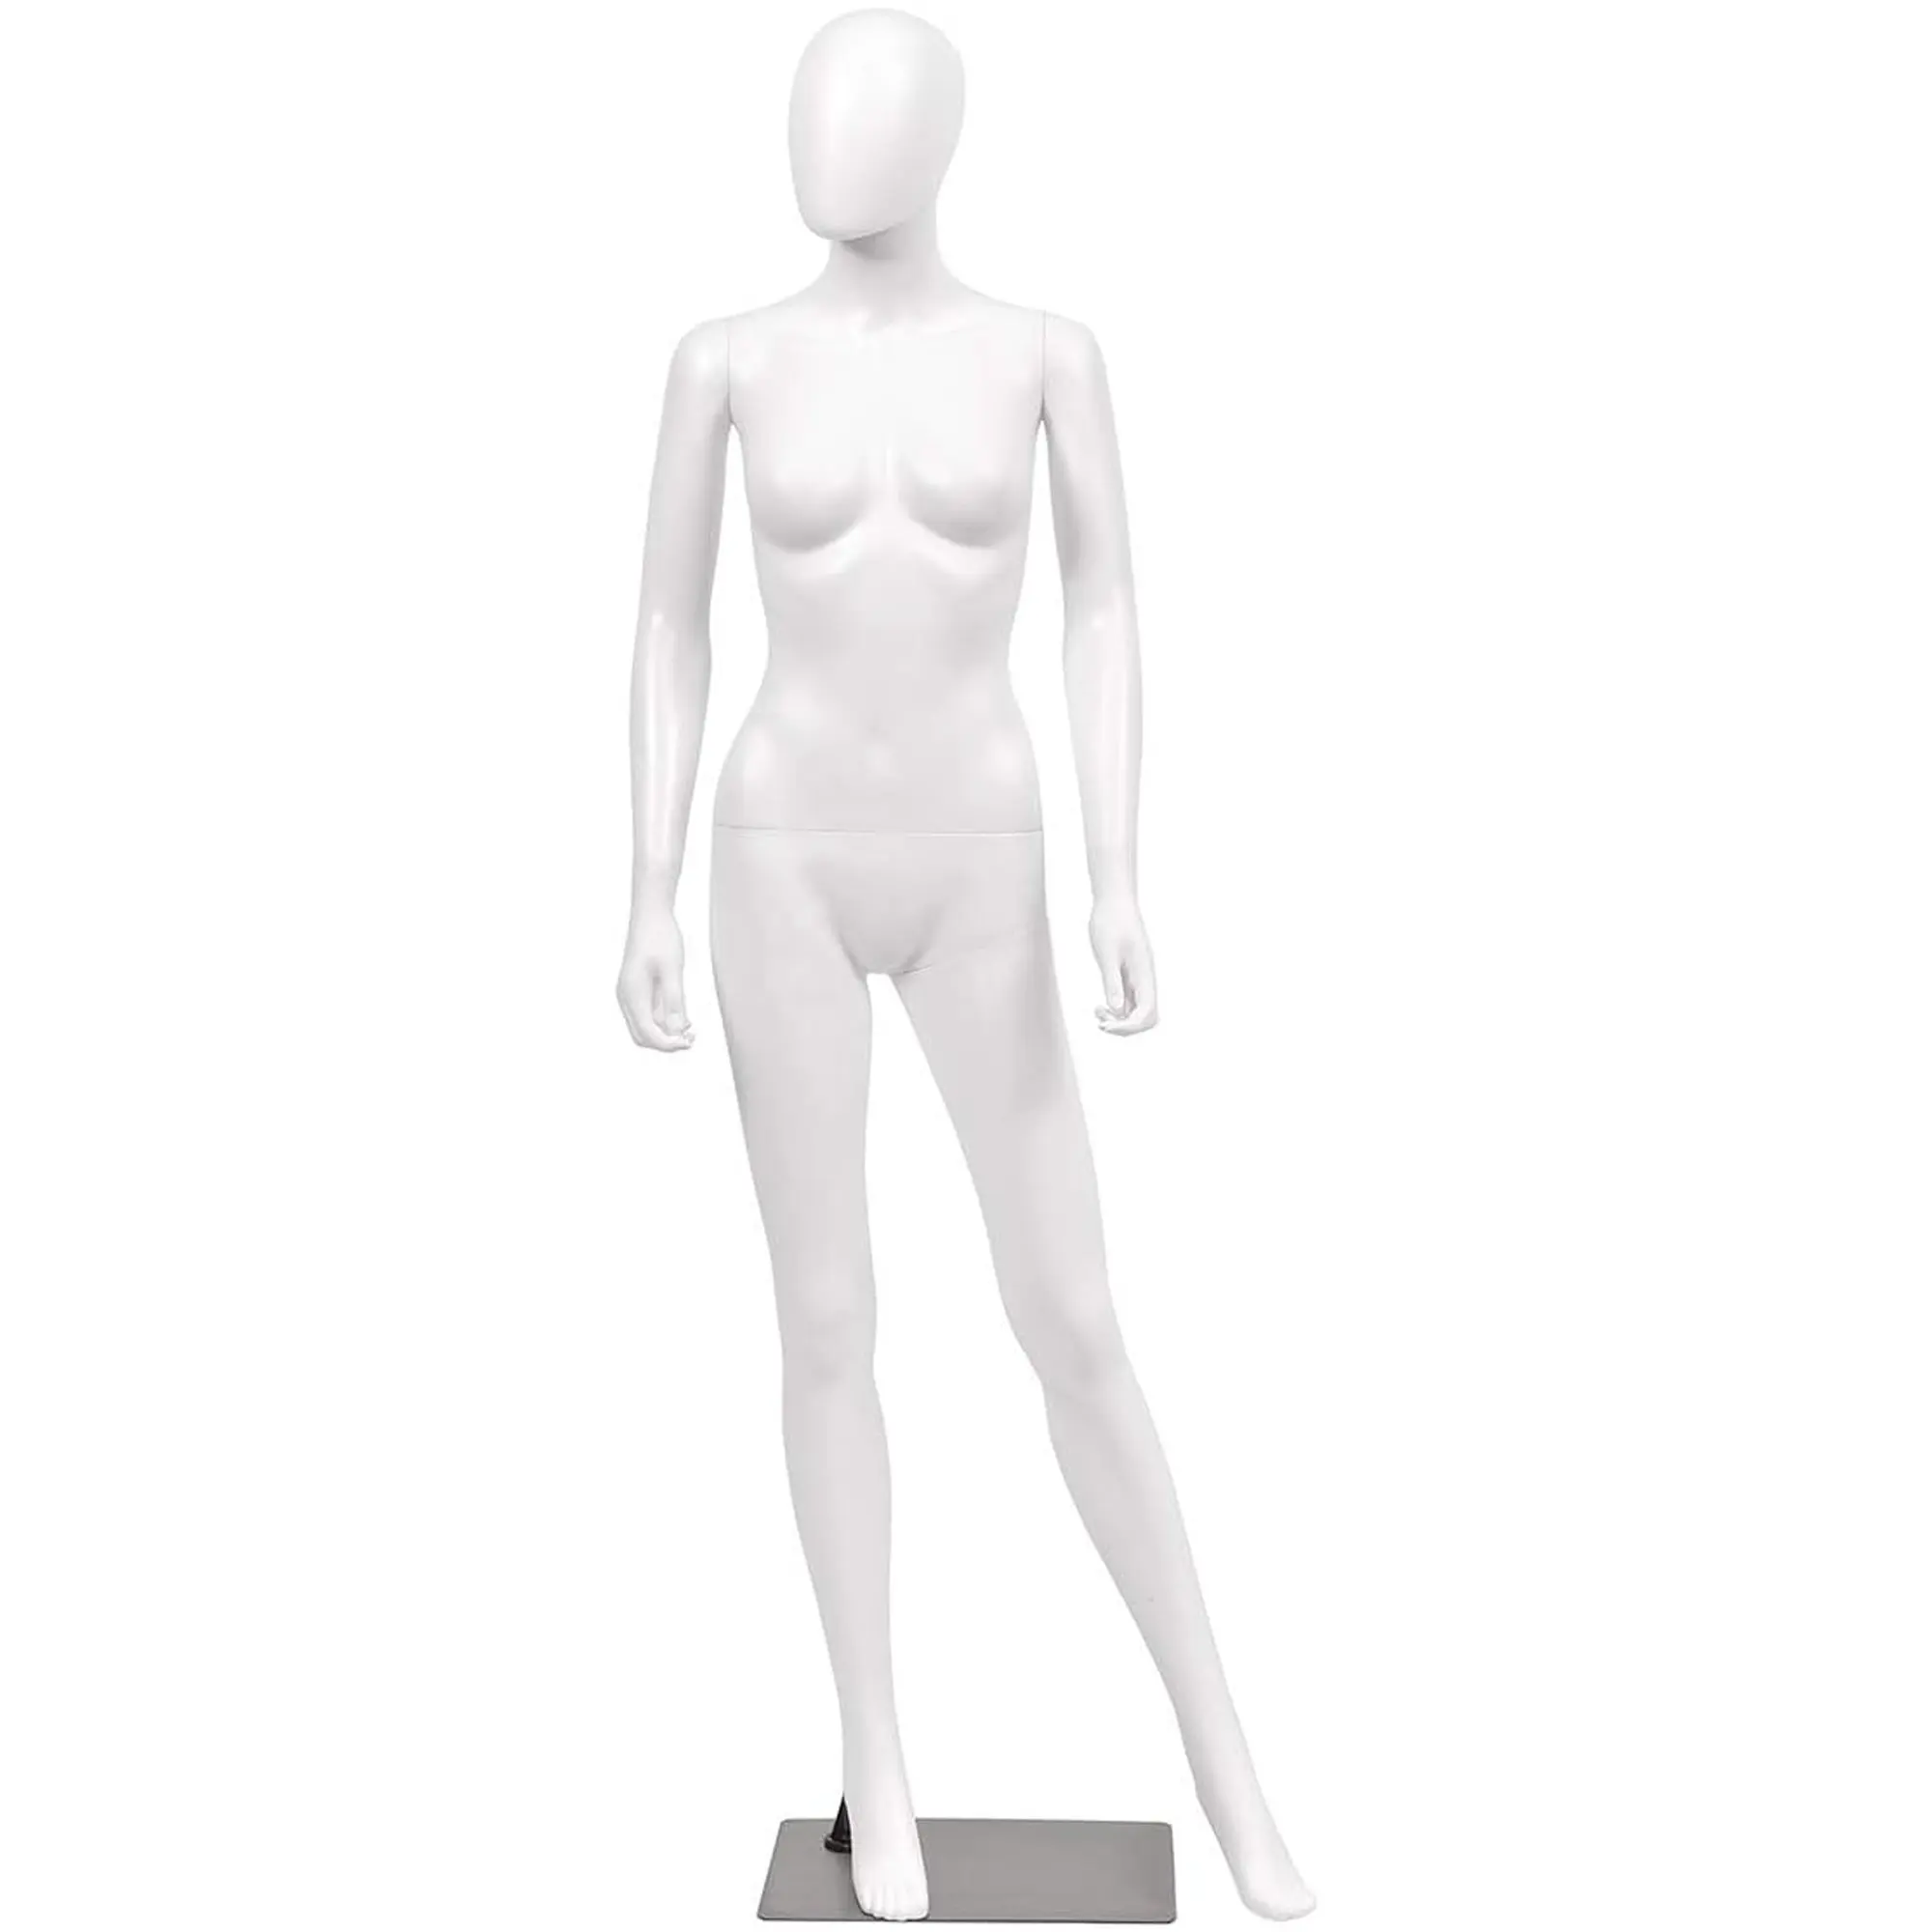 Низкая цена, оптовая продажа, белый манекен из полипропилена, полный рост 175 см, гибкий женский манекен с железной основой